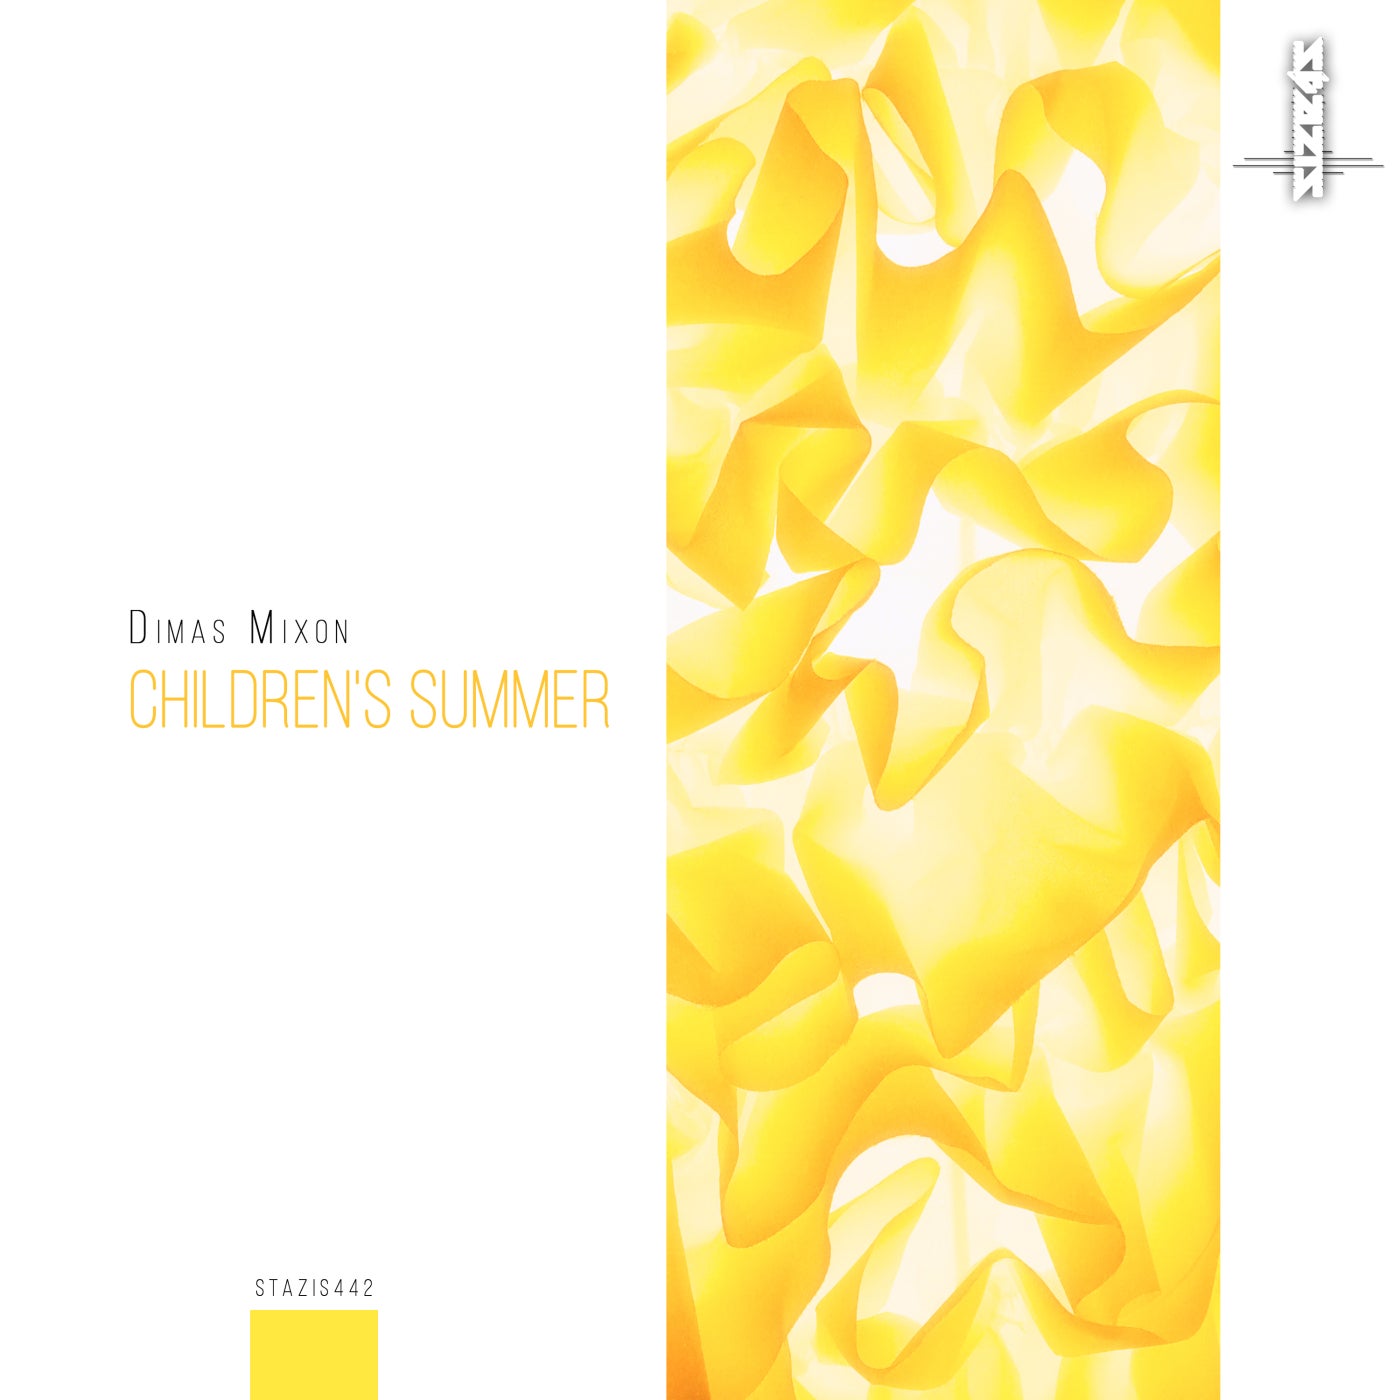 Children's Summer